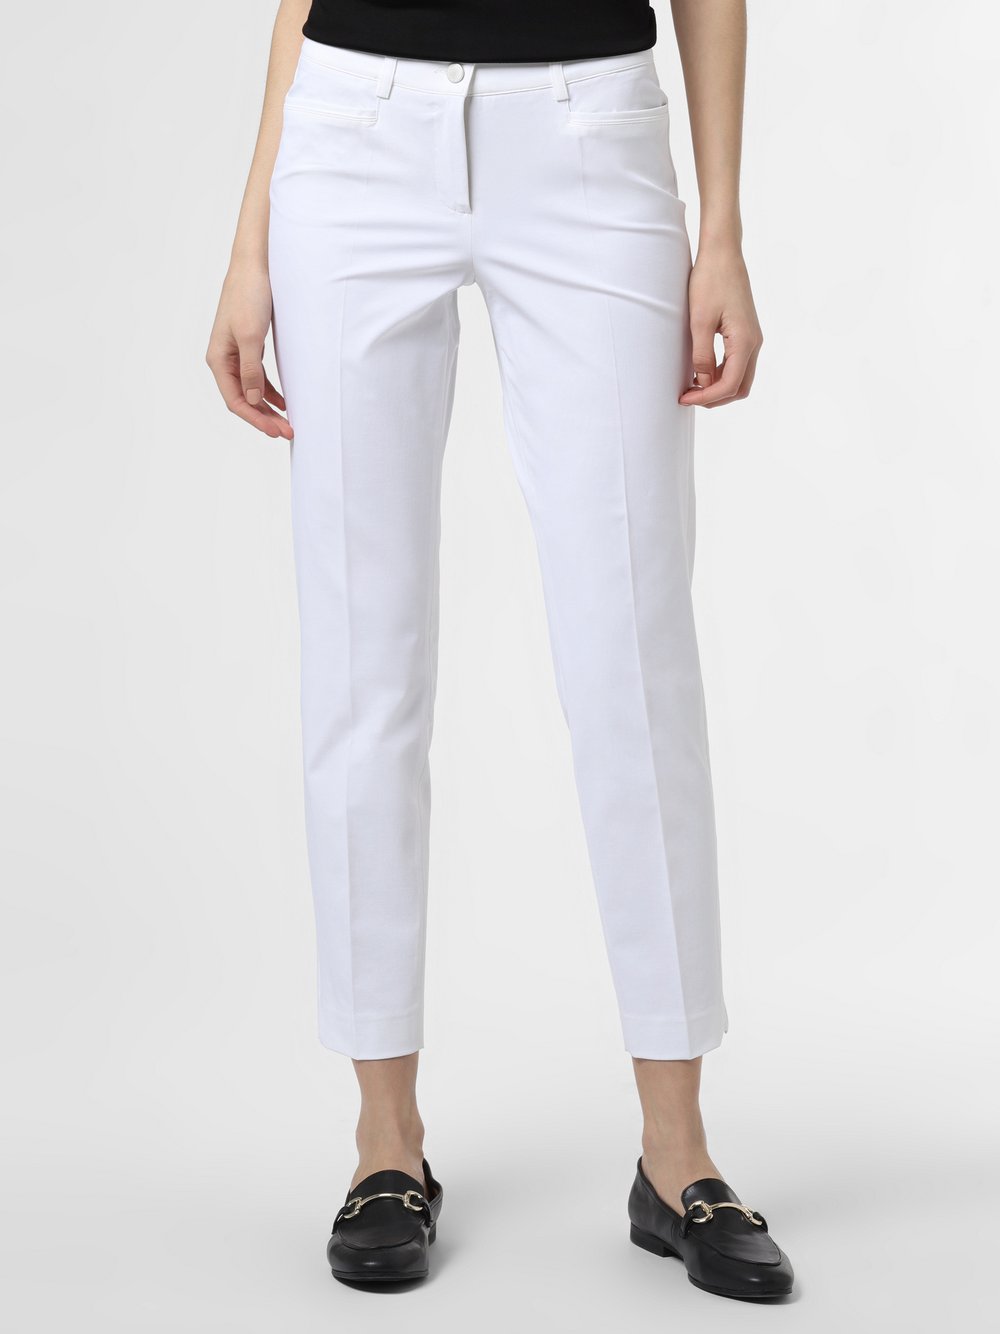 Cambio - Spodnie damskie – Renira, biały